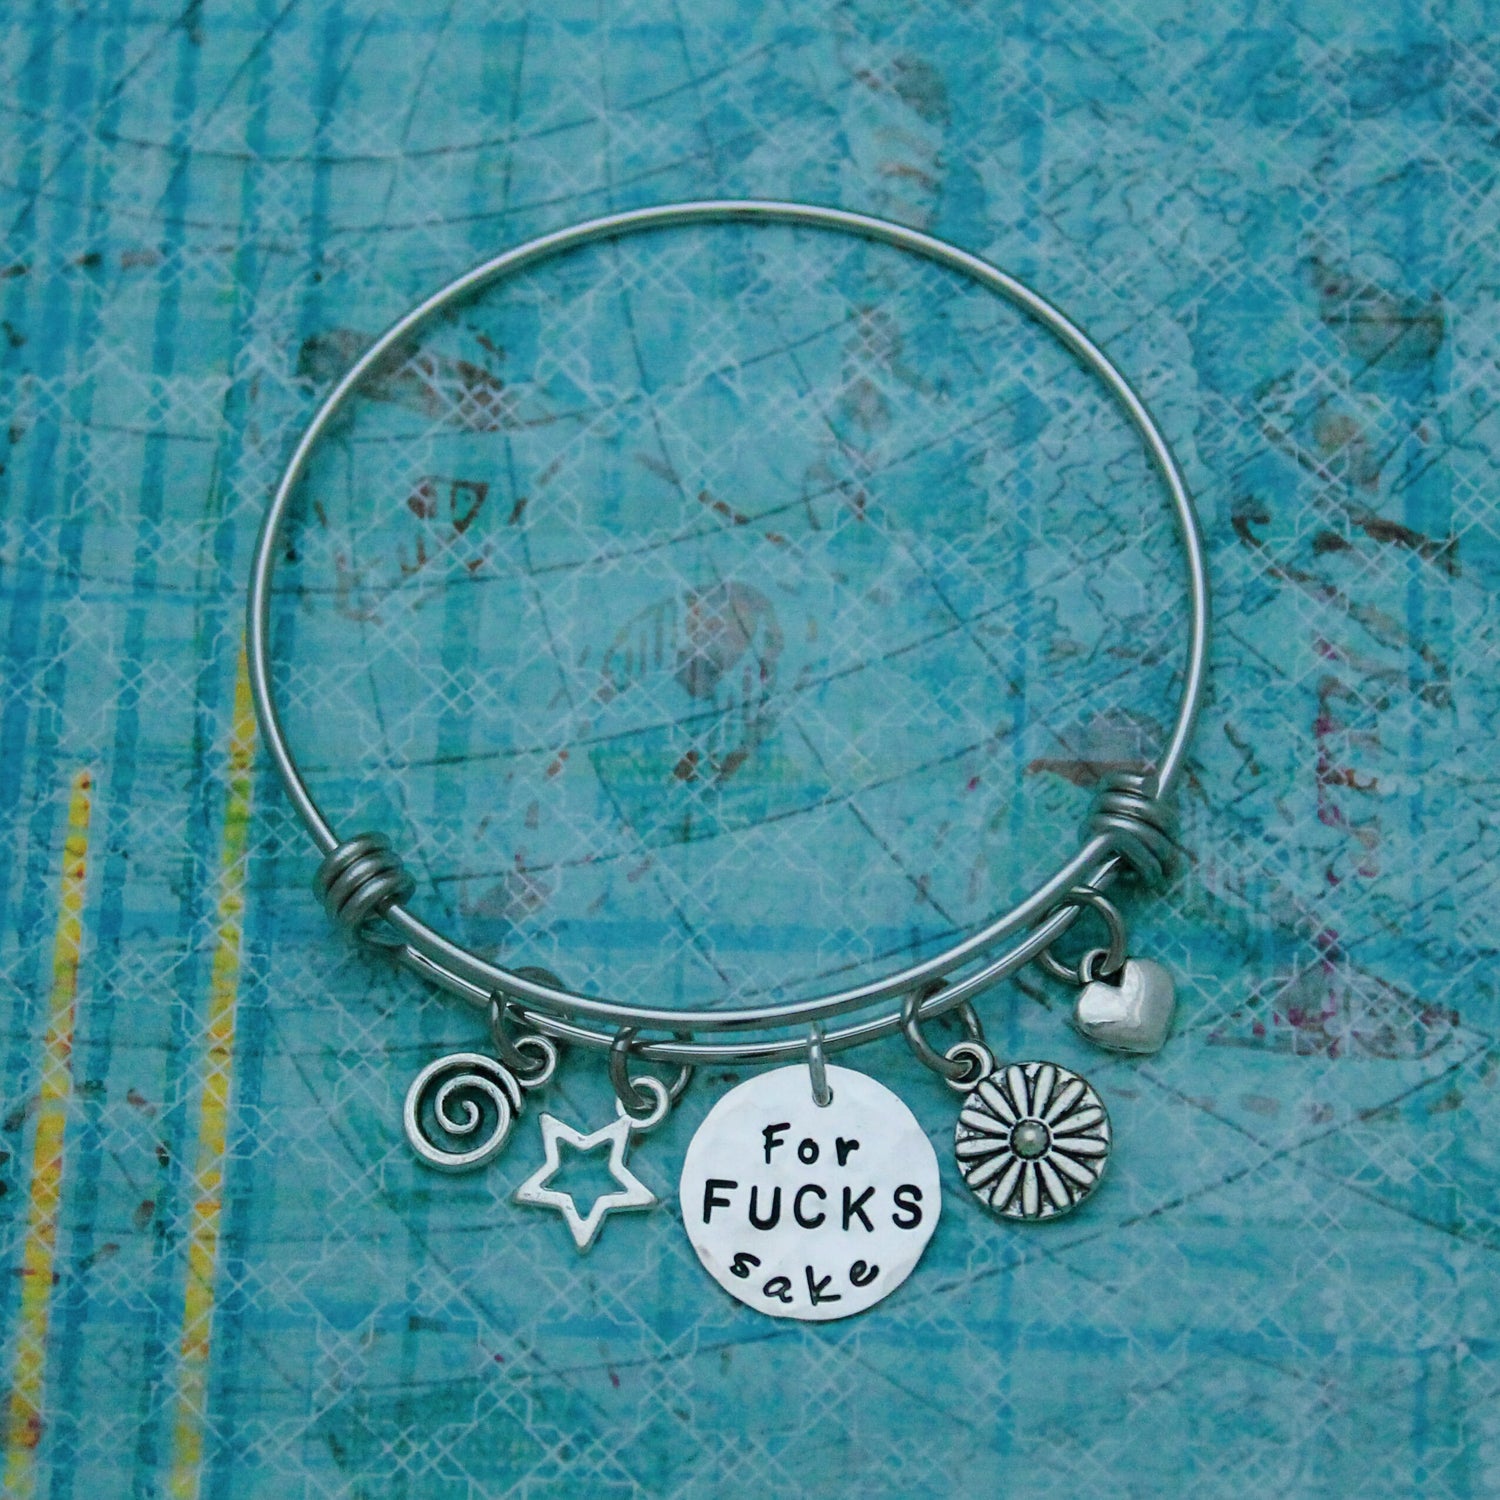 For FUCKS Sake Bracelet Bangle, Motivational Jewelry Bracelet, Curse Word Jewelry Bracelet Gift, Fun Hand Made Personalized Gift for Her